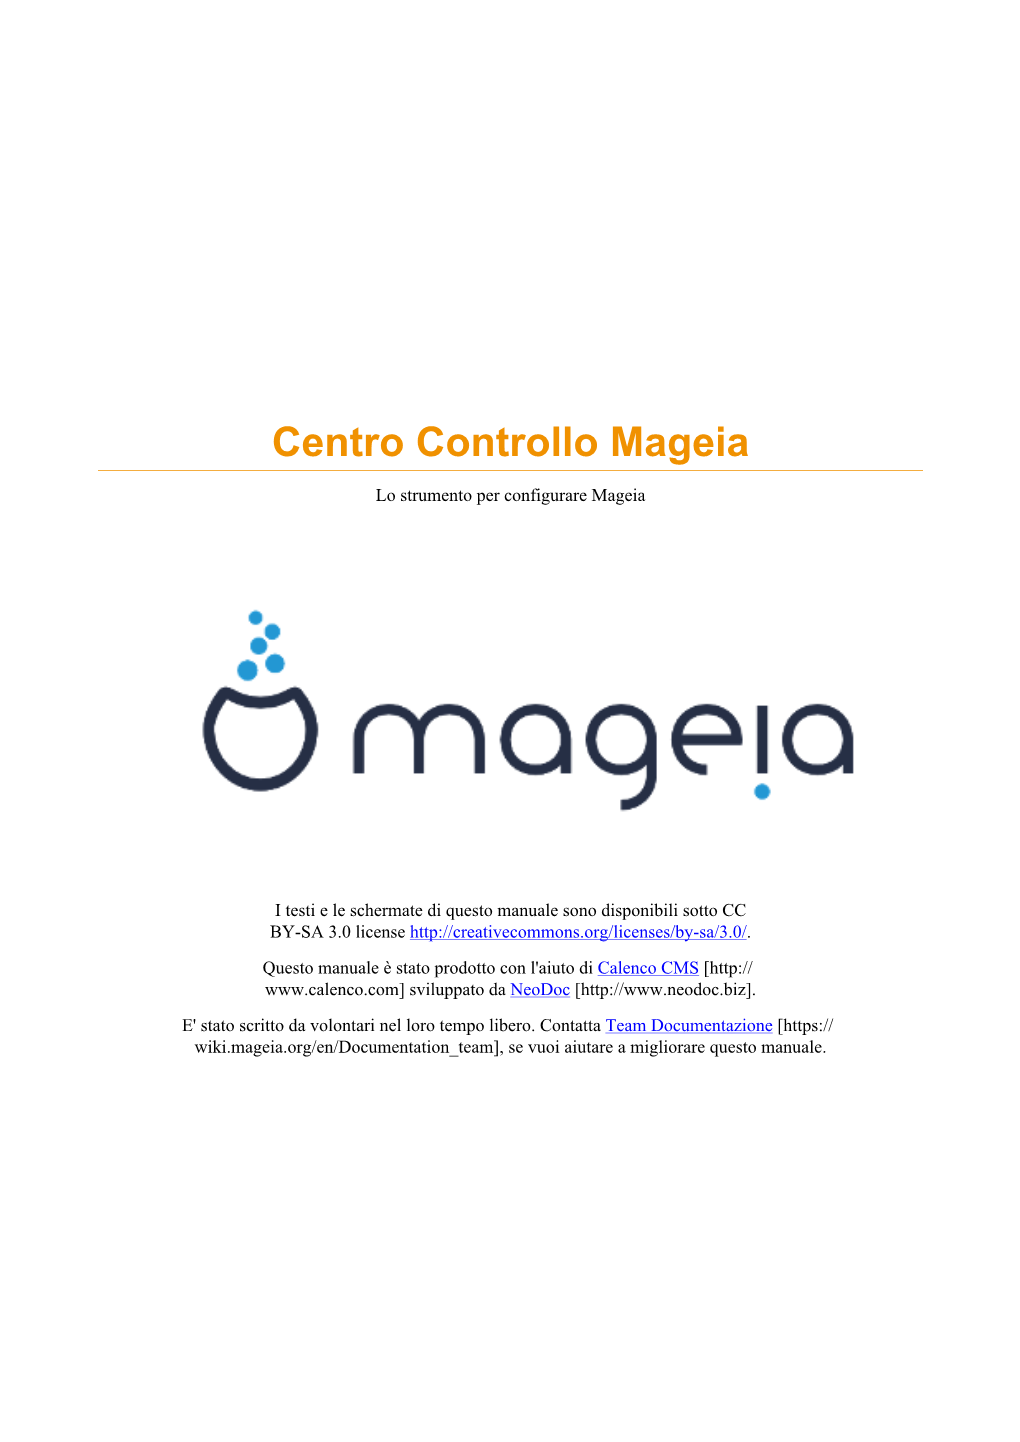 Centro Controllo Mageia